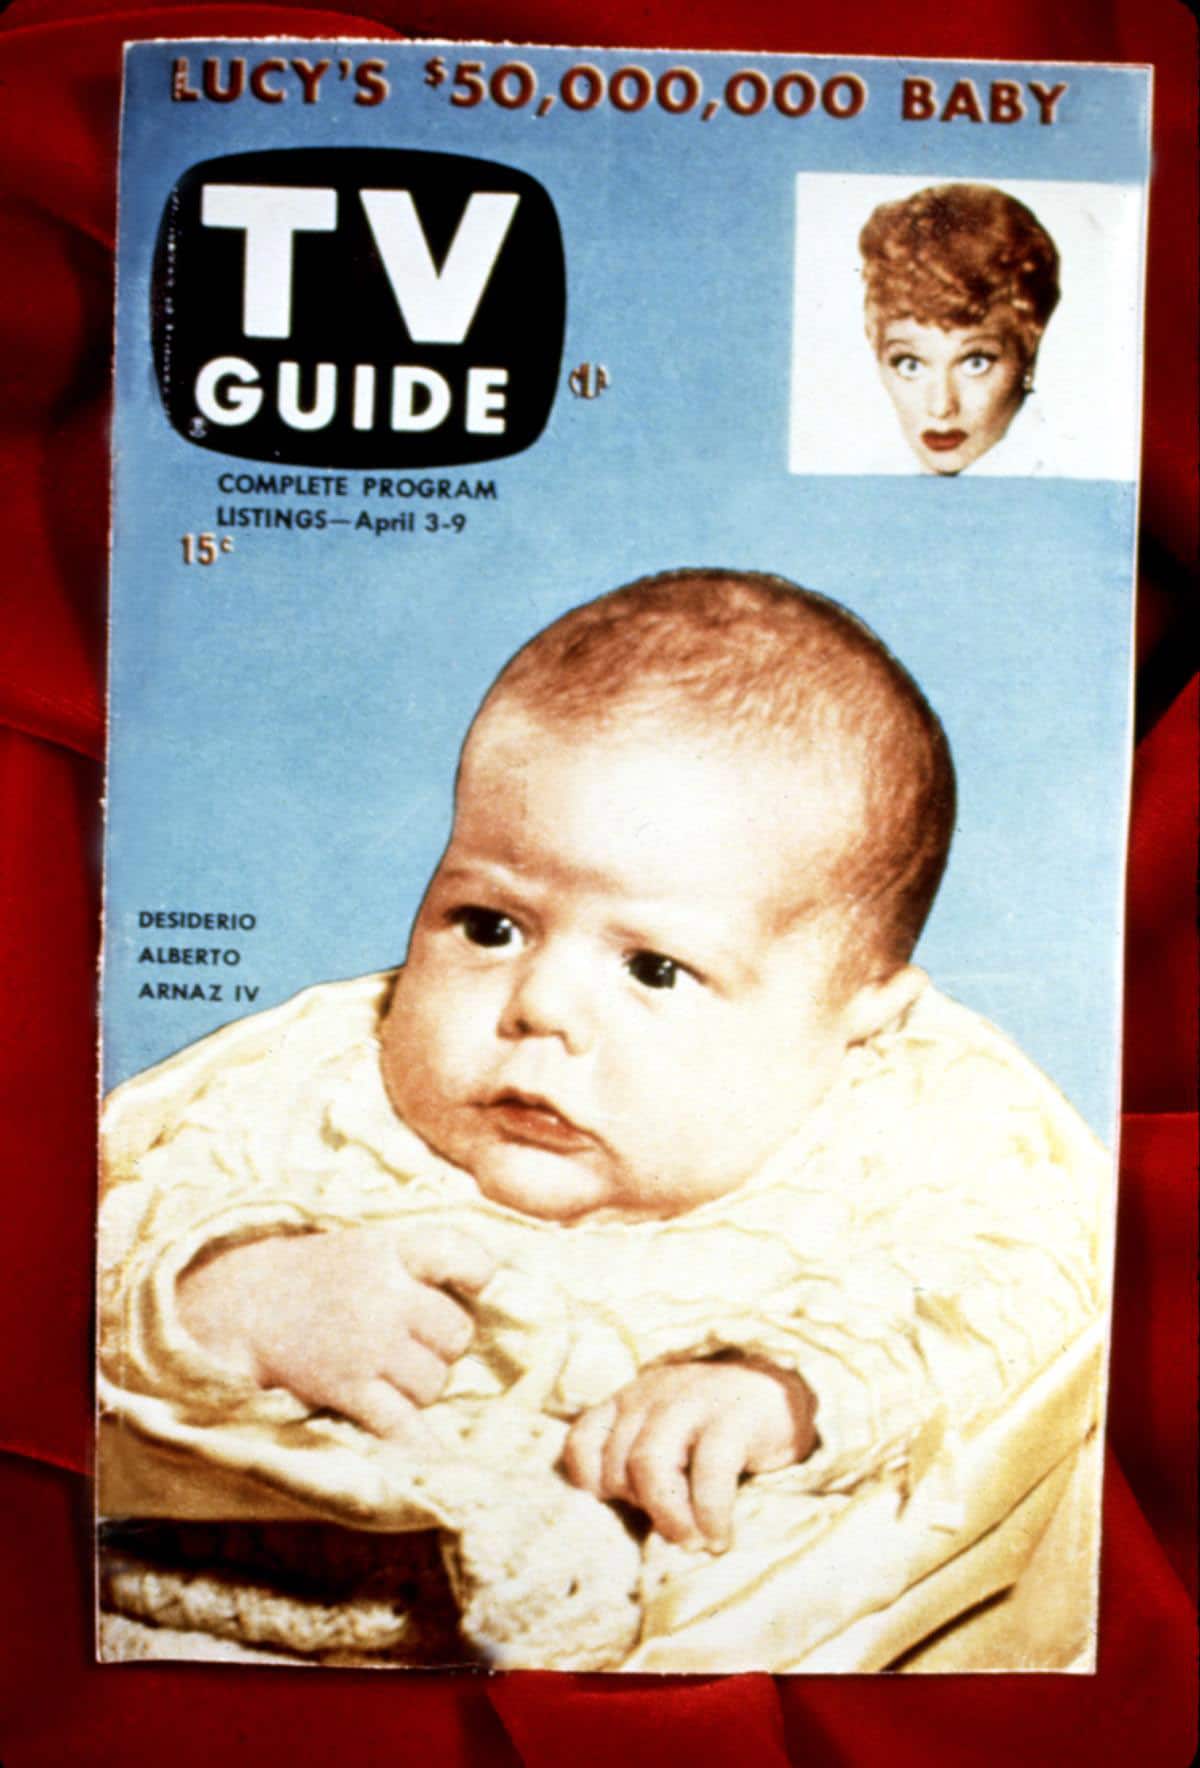 I LOVE LUCY, TV Guide cover, Desi Arnaz Jr., Lucille Ball, 4/3-9, 1953